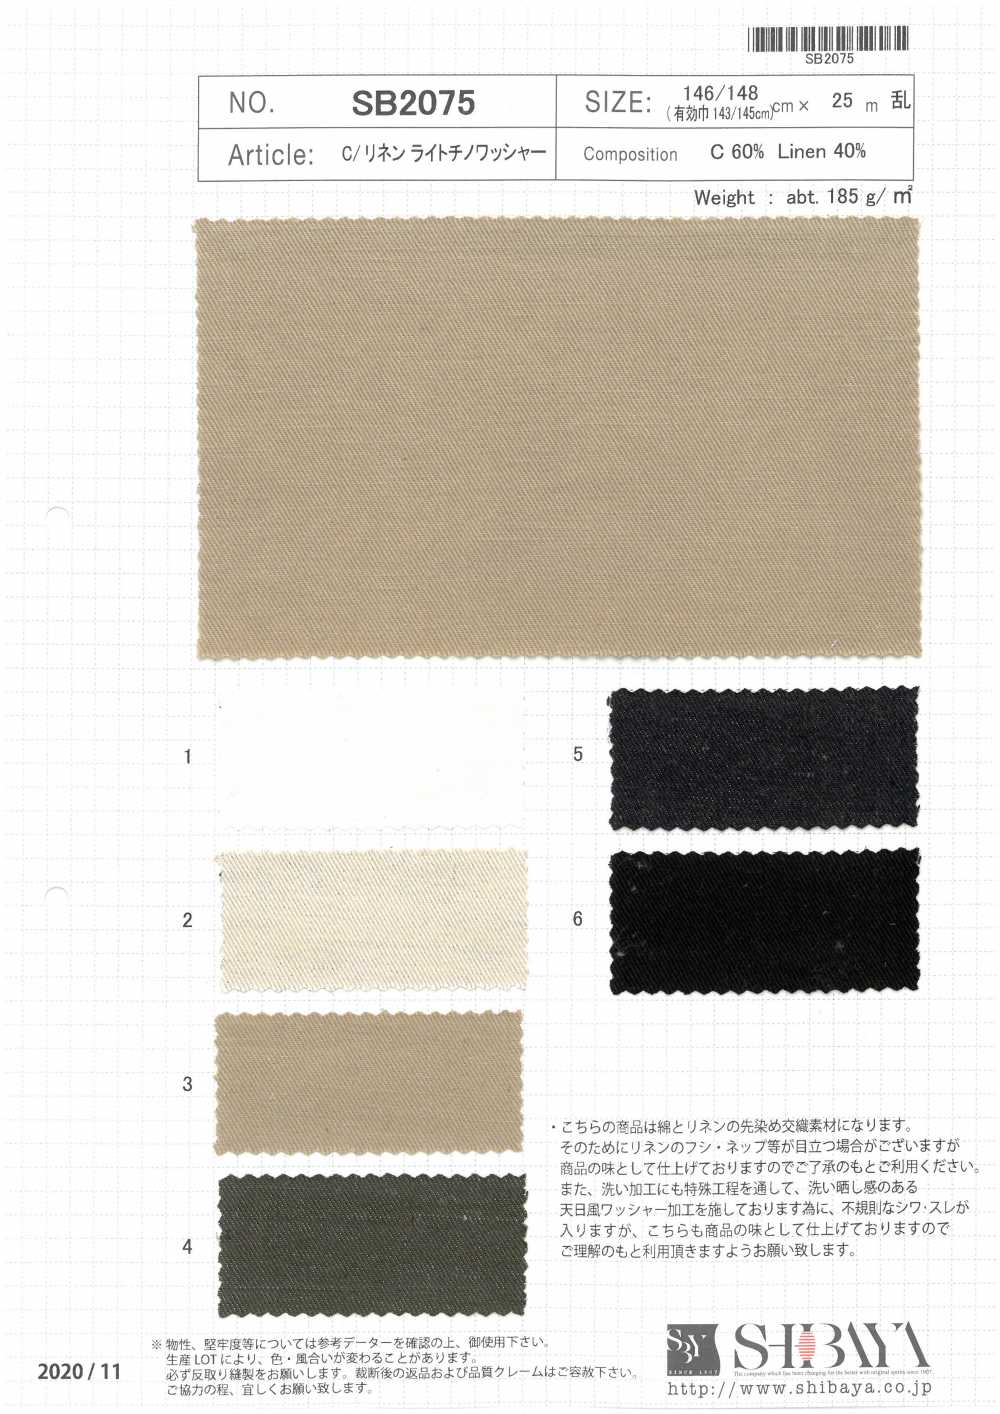 SB2075 C / Traitement De La Rondelle Chino Légère En Lin[Fabrication De Textile] SHIBAYA